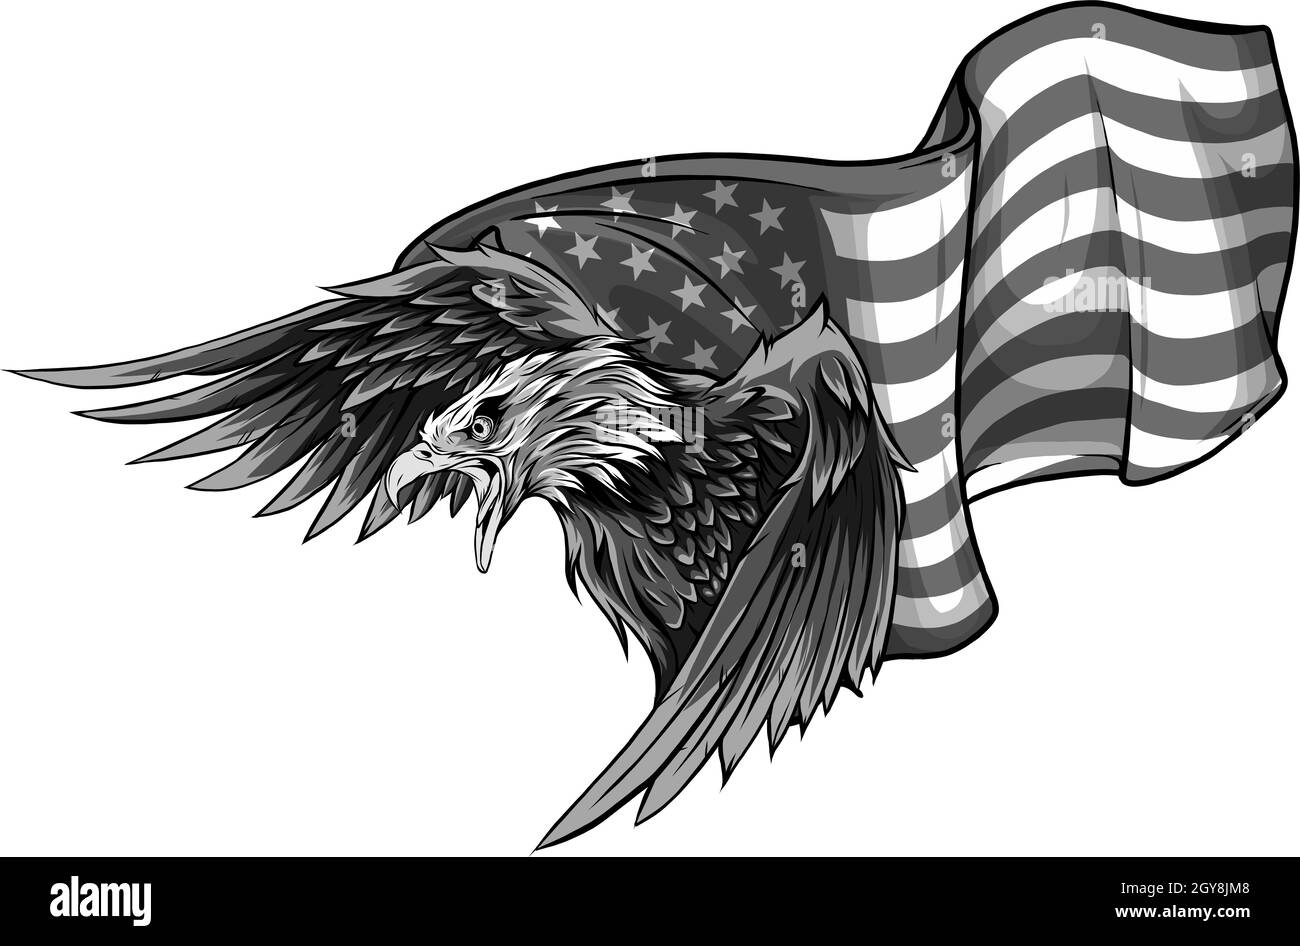 Illustration de l'aigle américain contre le drapeau américain Banque D'Images